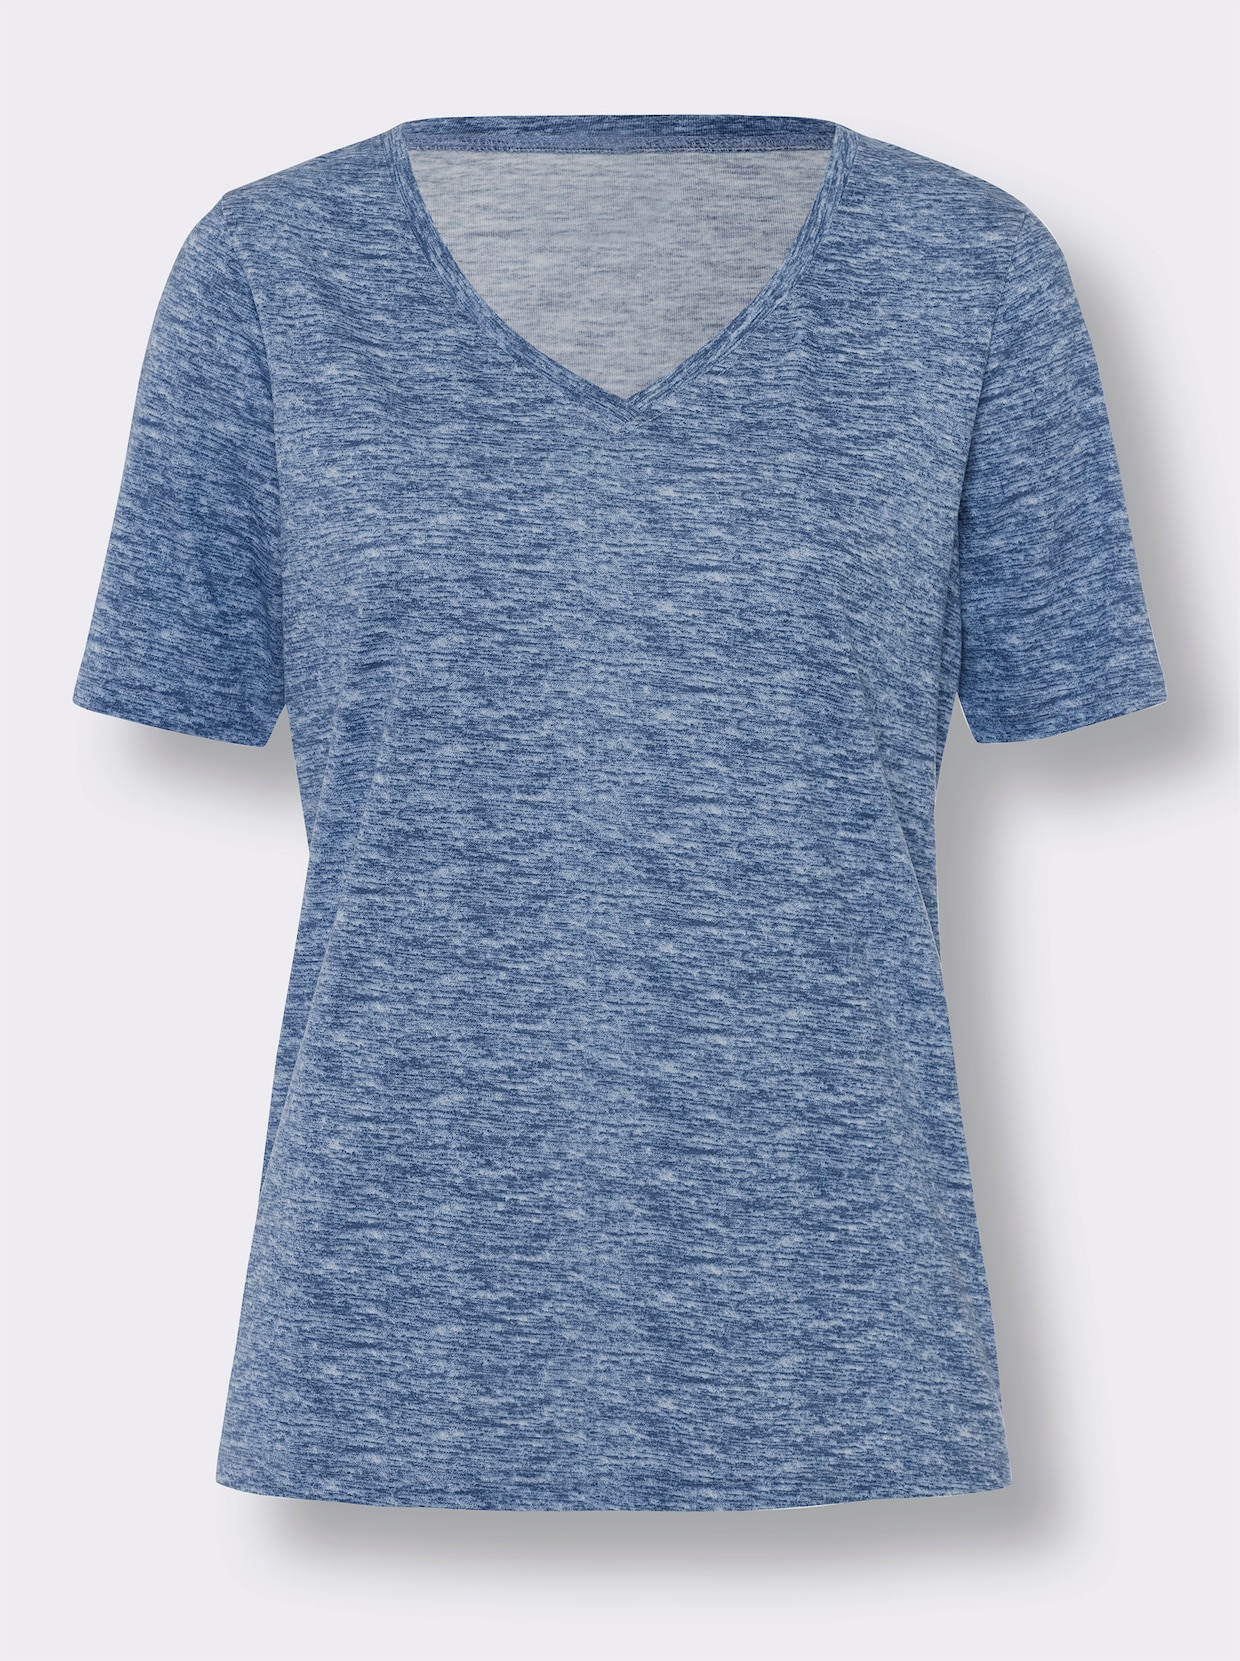 Tričko s krátkým rukávem - džínová modrá-melír